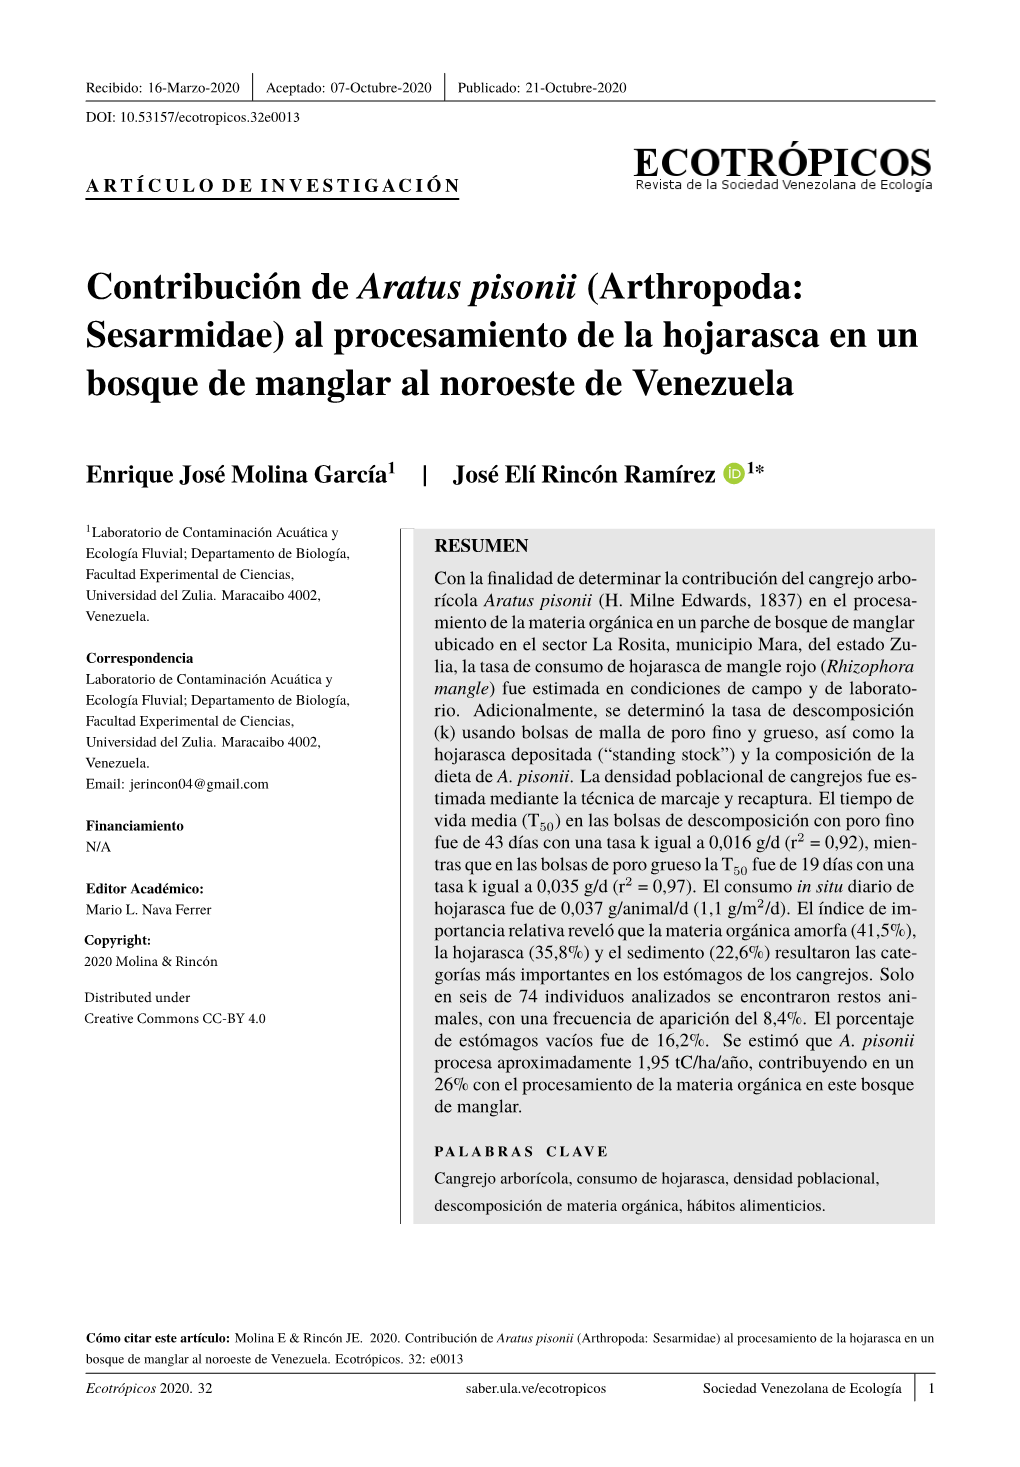 Contribución De Aratus Pisonii (Arthropoda: Sesarmidae) Al Procesamiento De La Hojarasca En Un Bosque De Manglar Al Noroeste De Venezuela